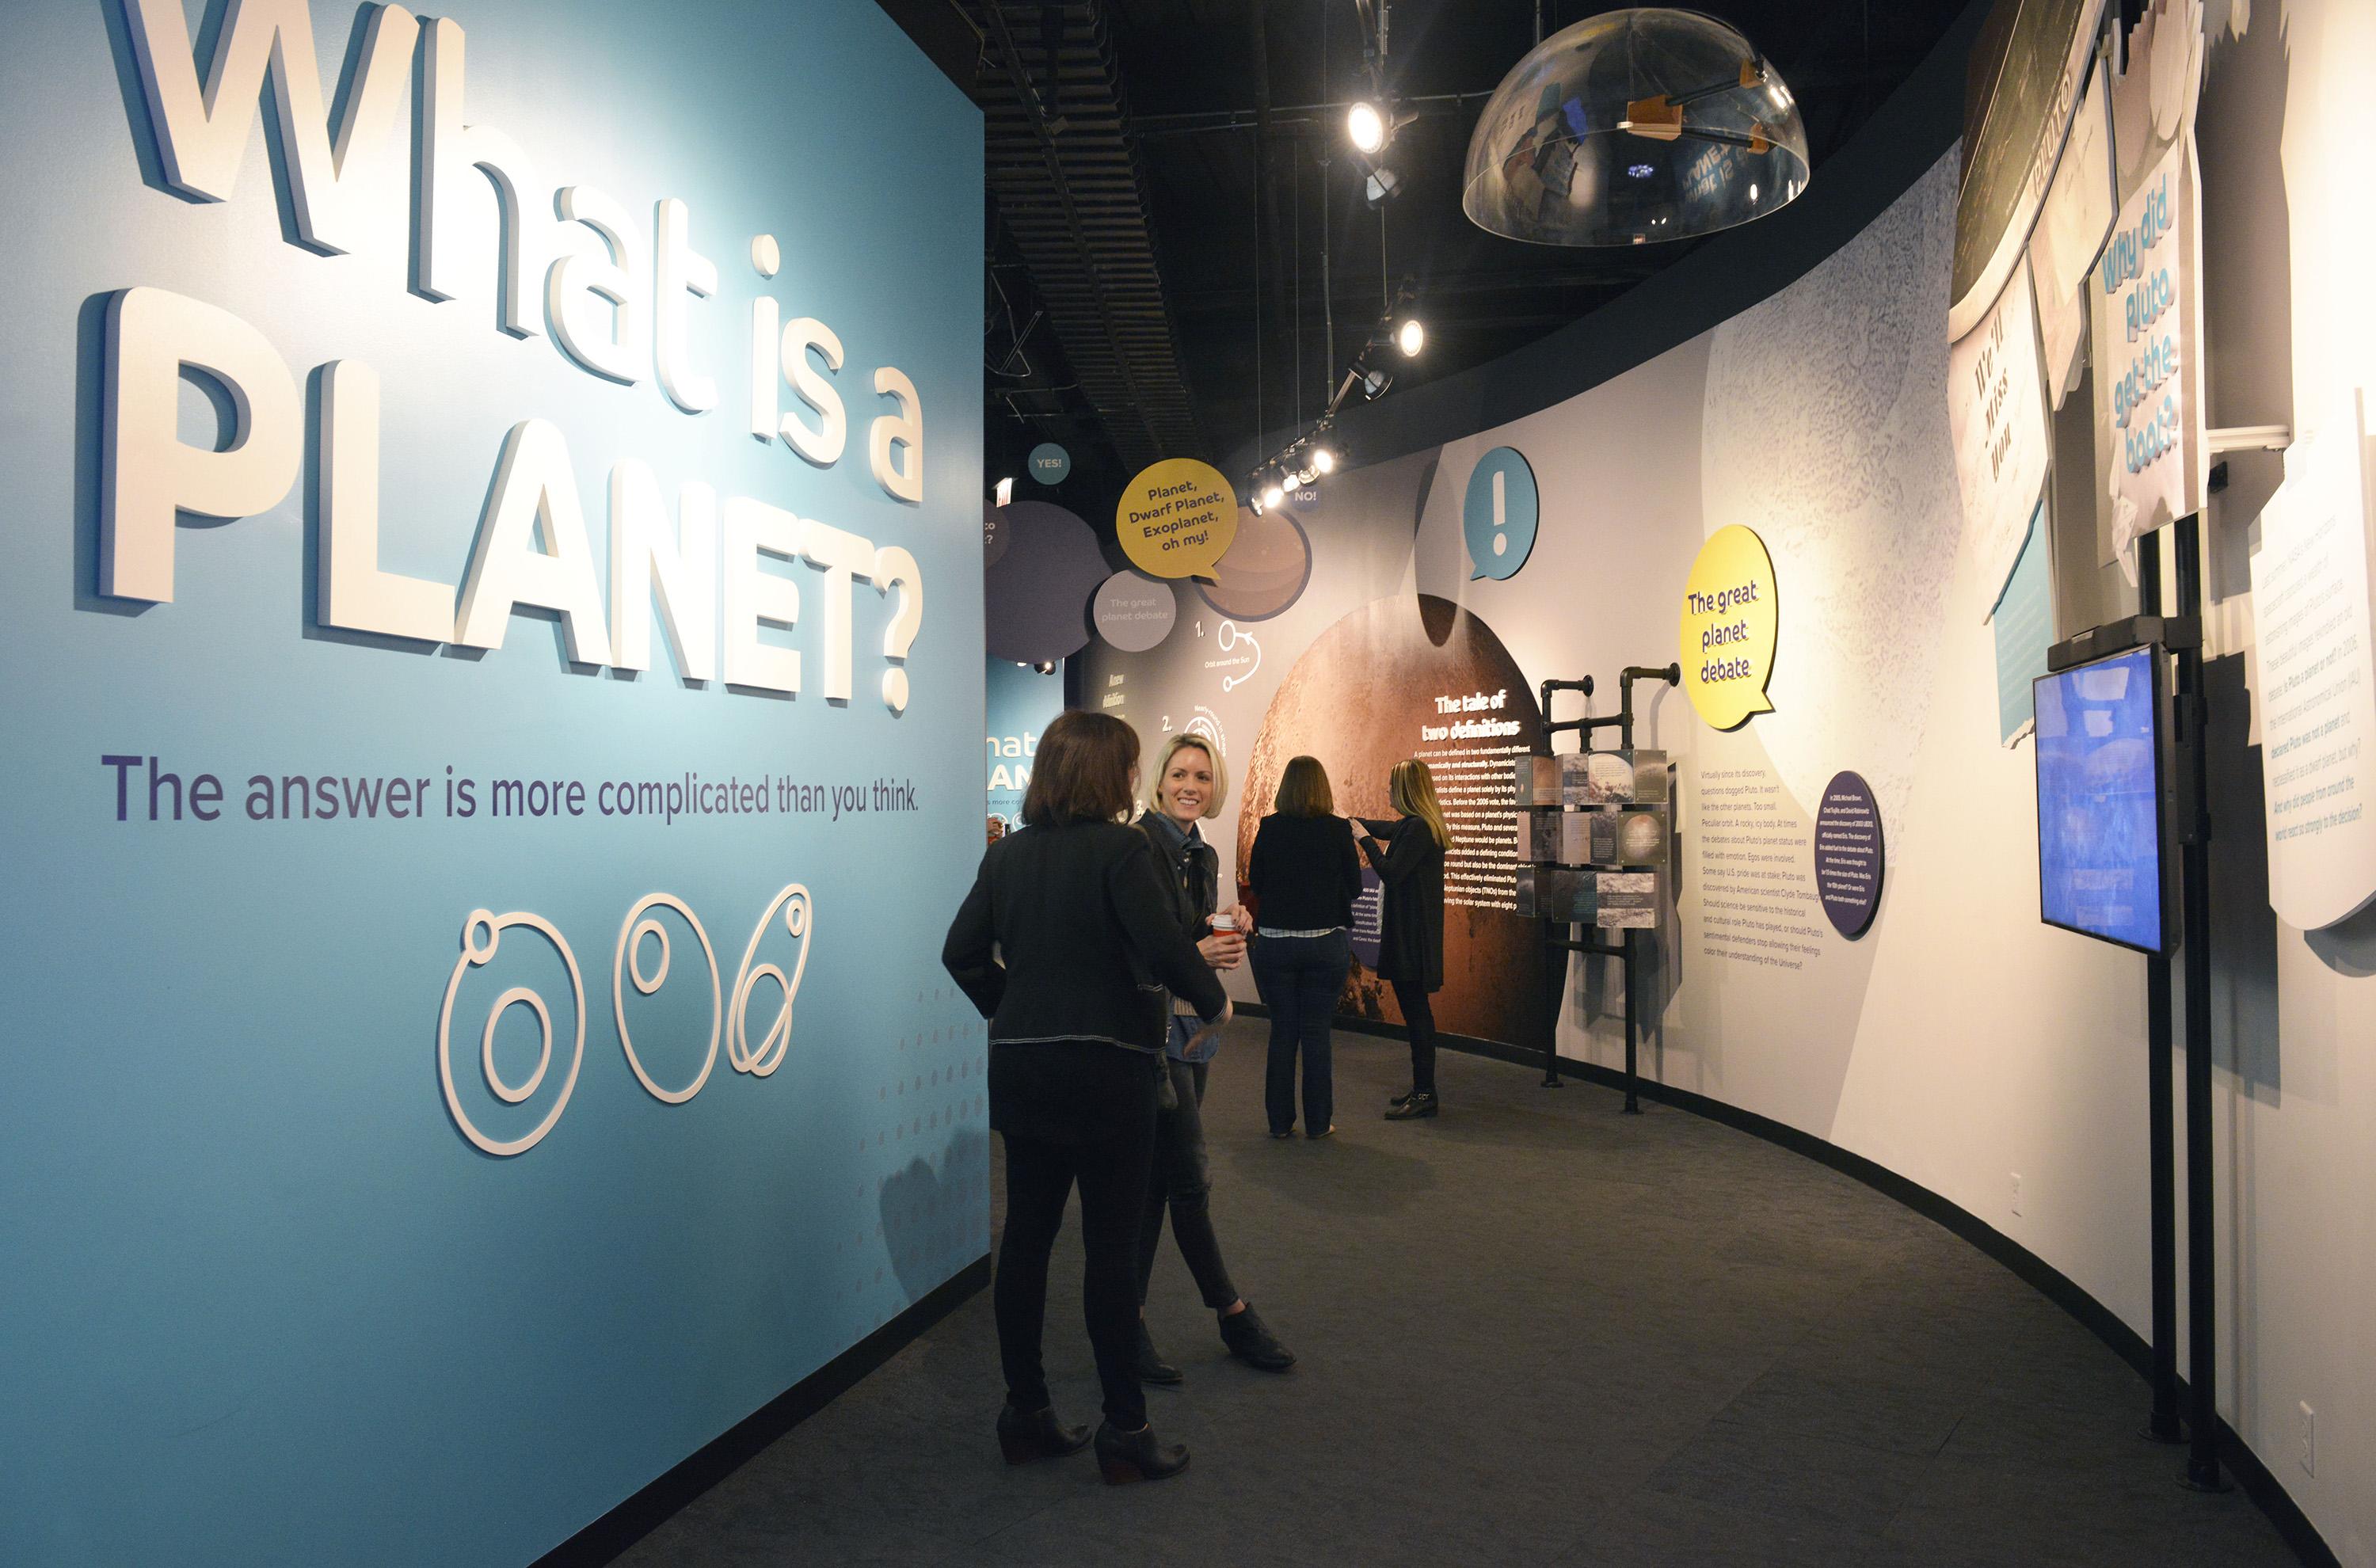 Adler Planetarium's "What is a Planet?" exhibit returns Friday, Feb. 16. (Courtesy Adler Planetarium)